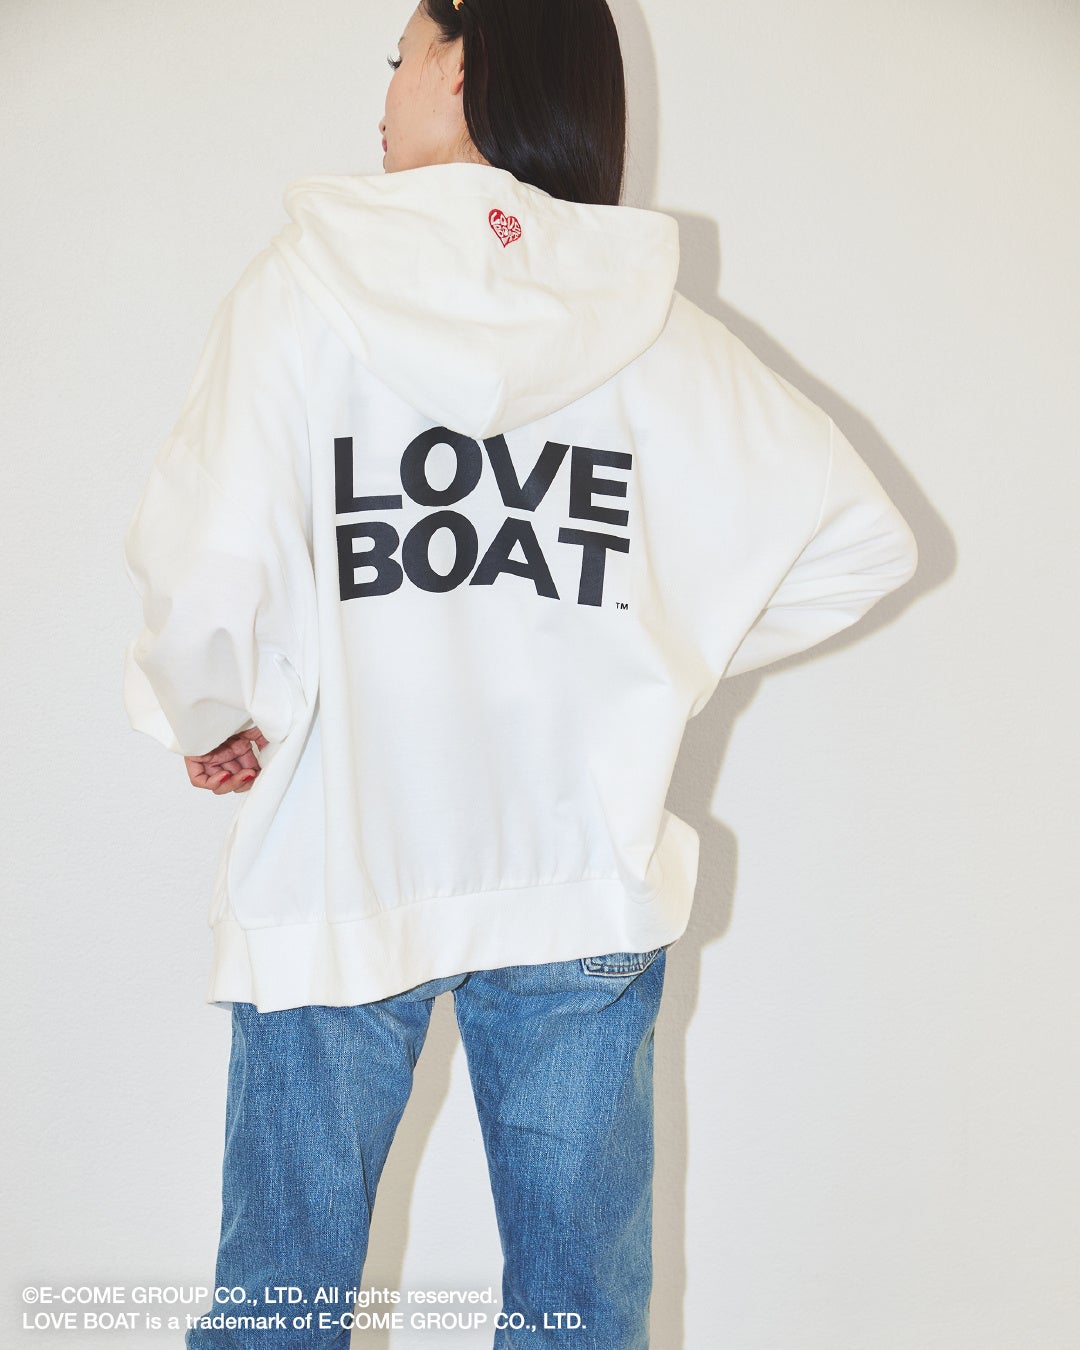 渋谷ギャルカルチャー”を代表するブランド「LOVE BOAT 」の別注